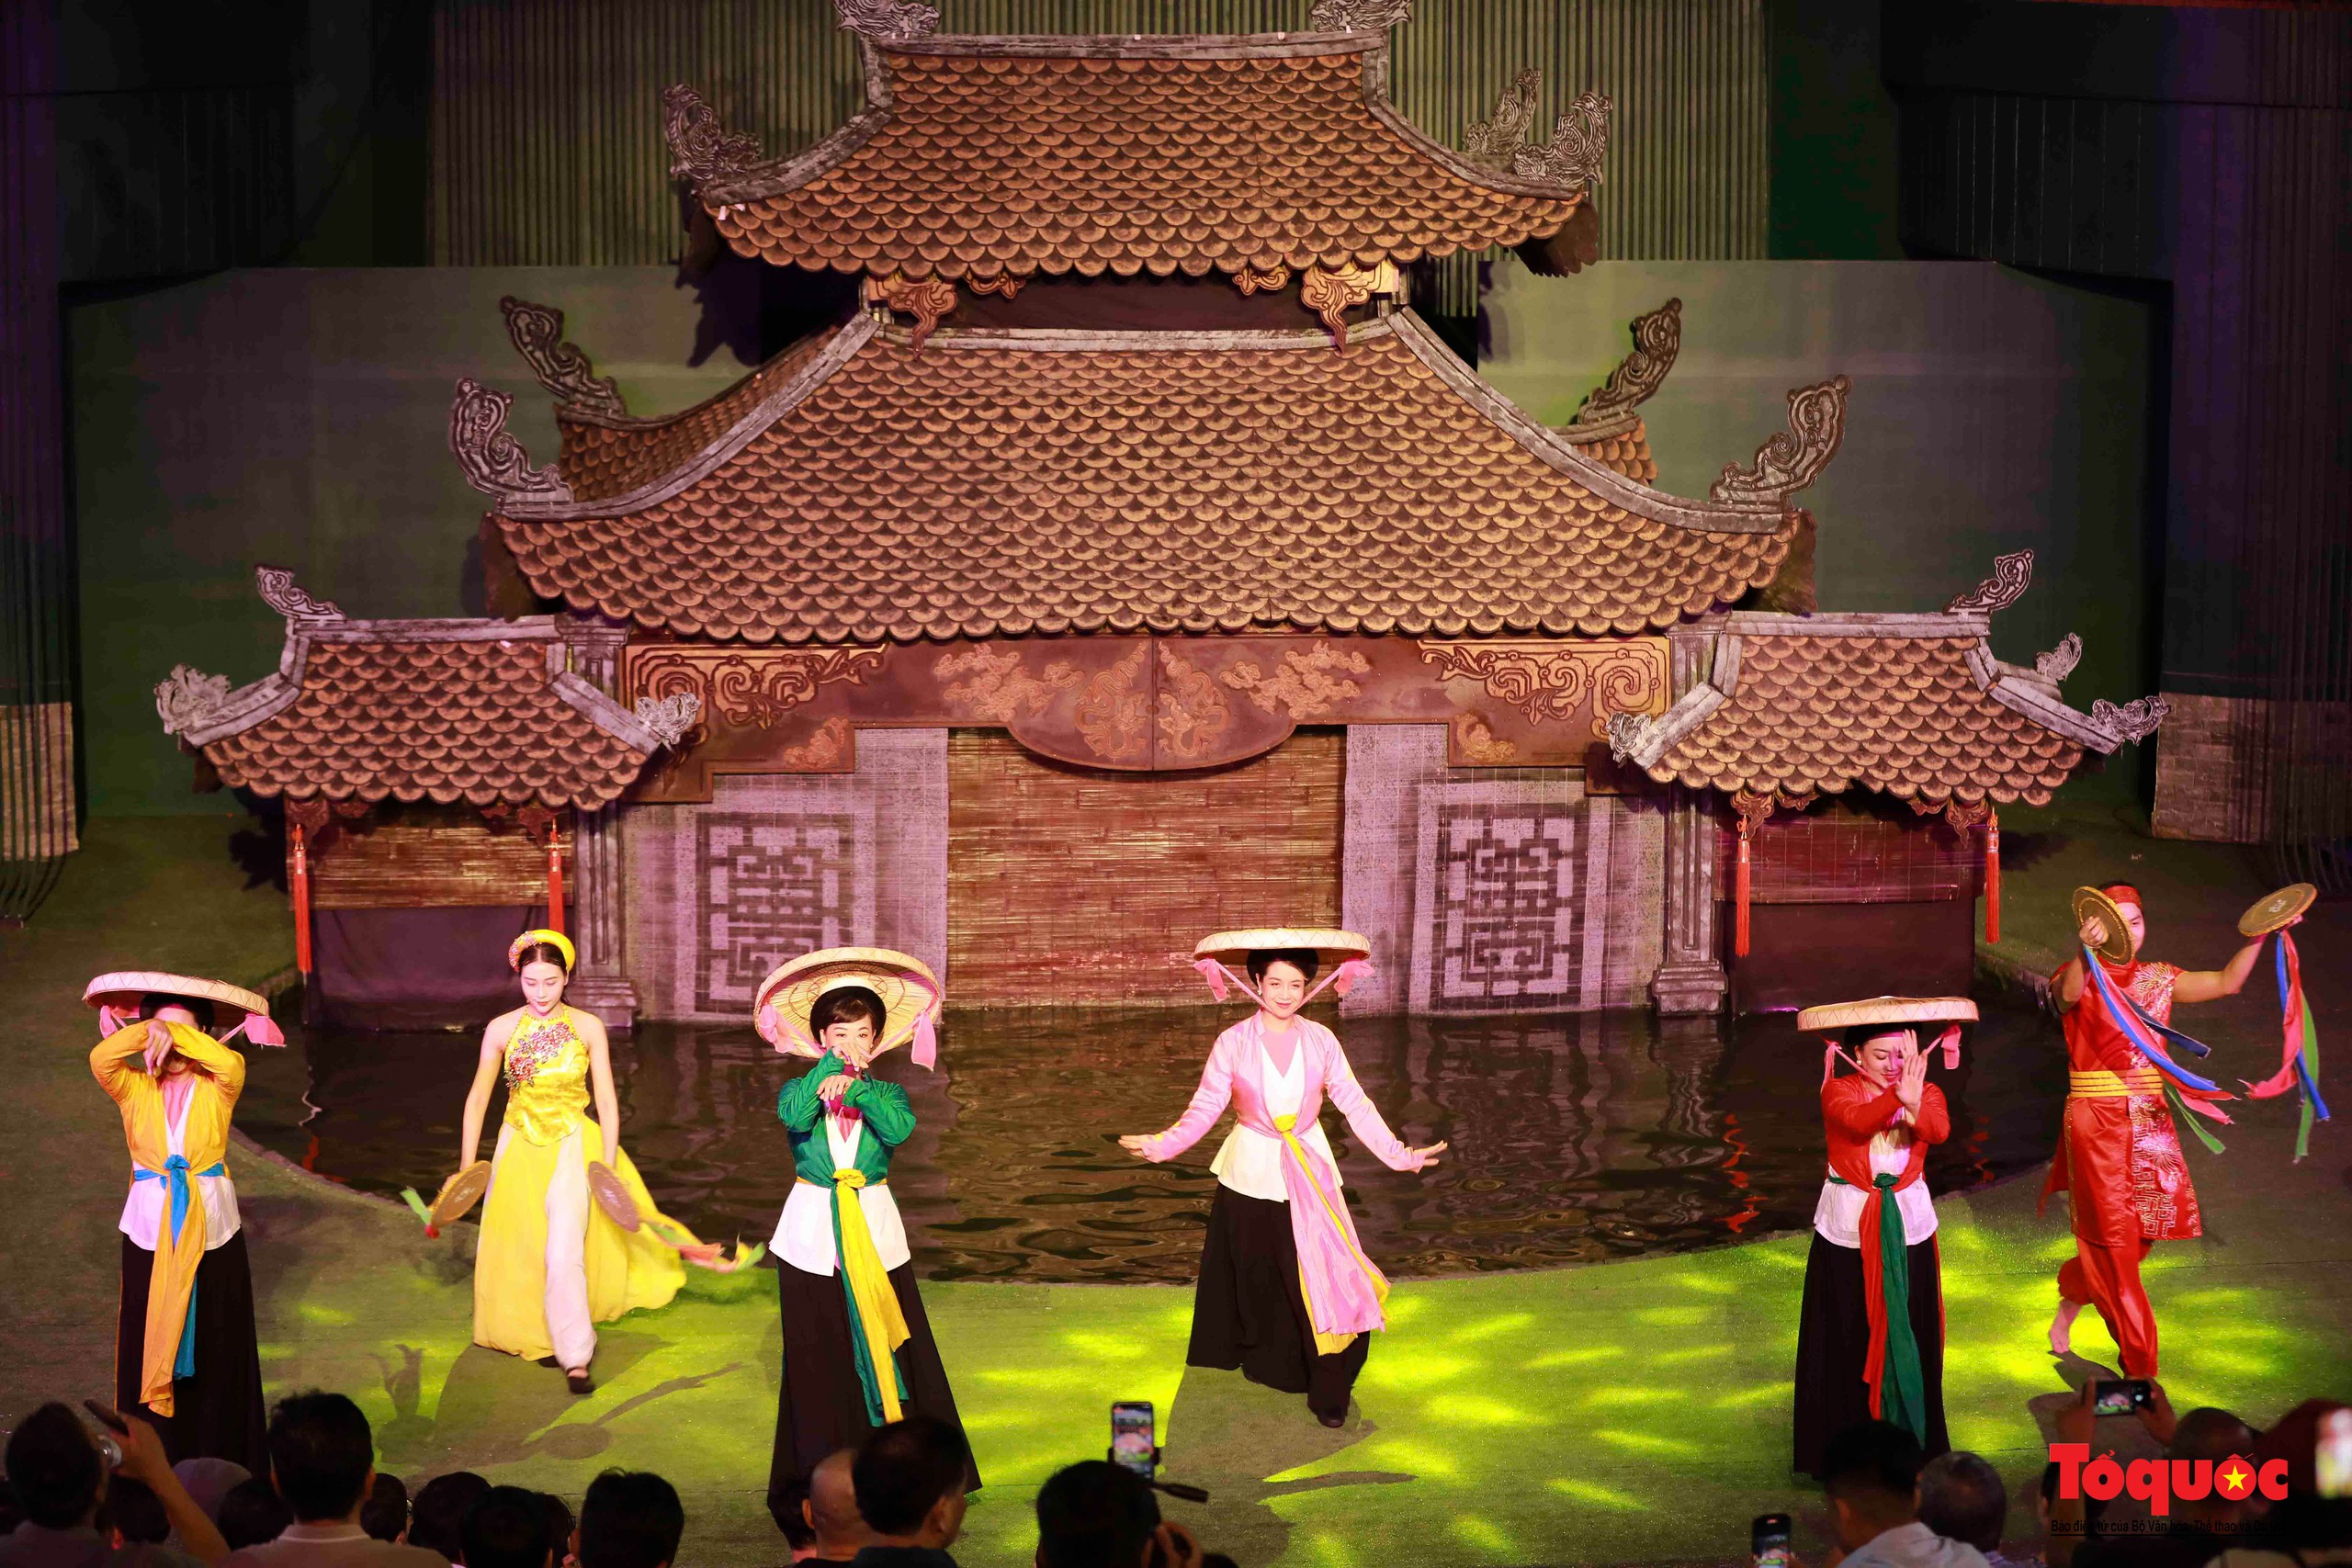 Du khách thích thú khám phá dòng chảy văn hóa Việt tại nhà hát múa rối lớn nhất miền Trung - Ảnh 3.